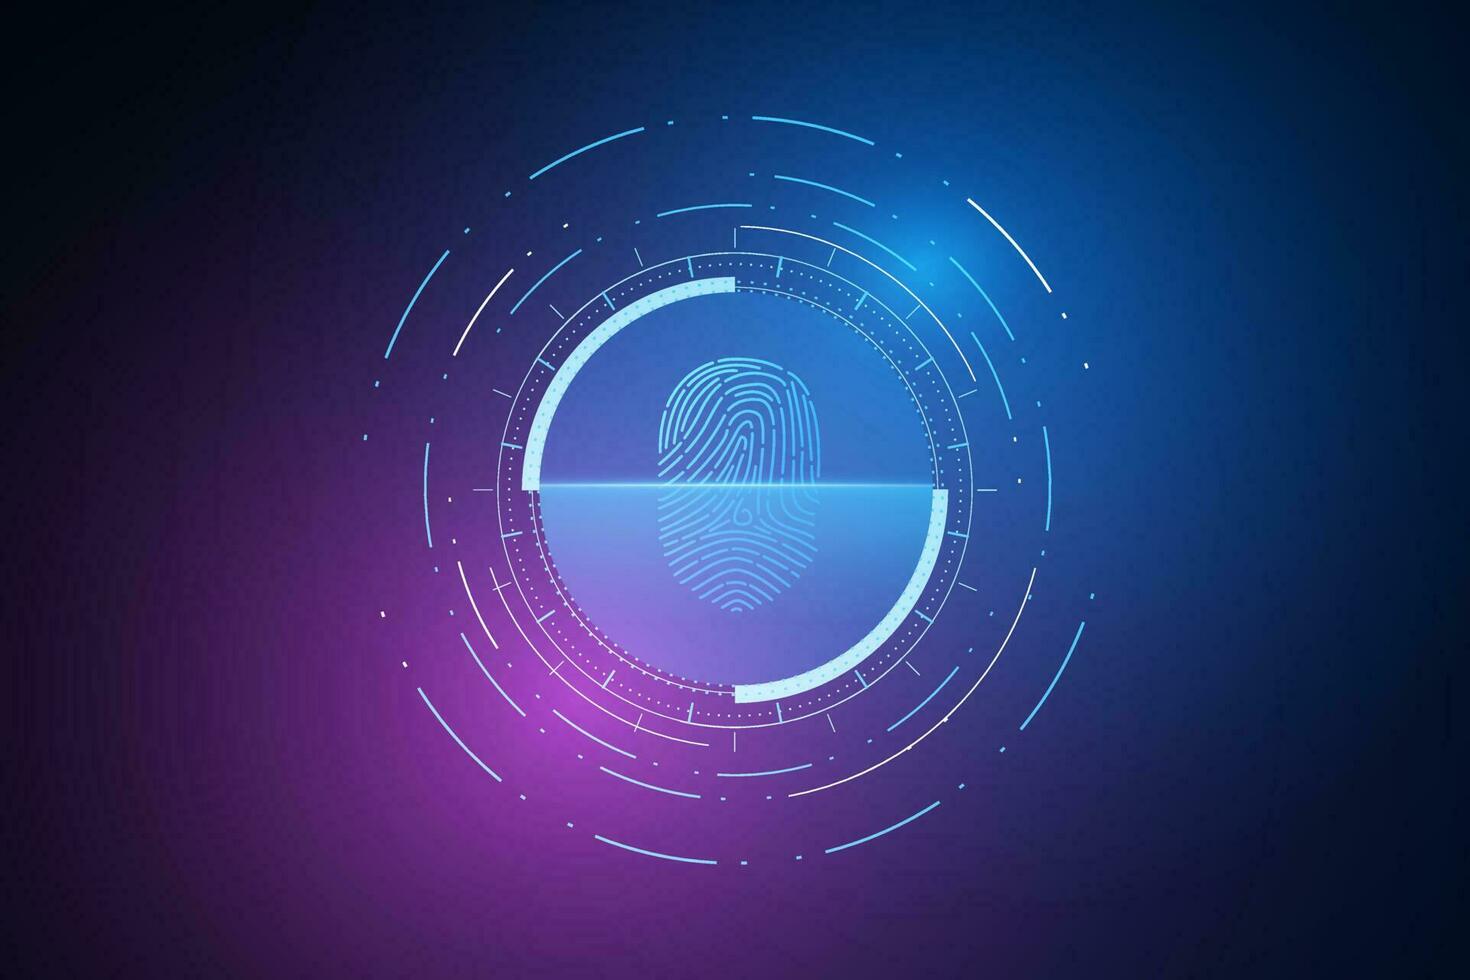 digitalizar impressão digital, segurança cibernética e controle de senha por meio de impressões digitais, acesso com identificação biométrica vetor